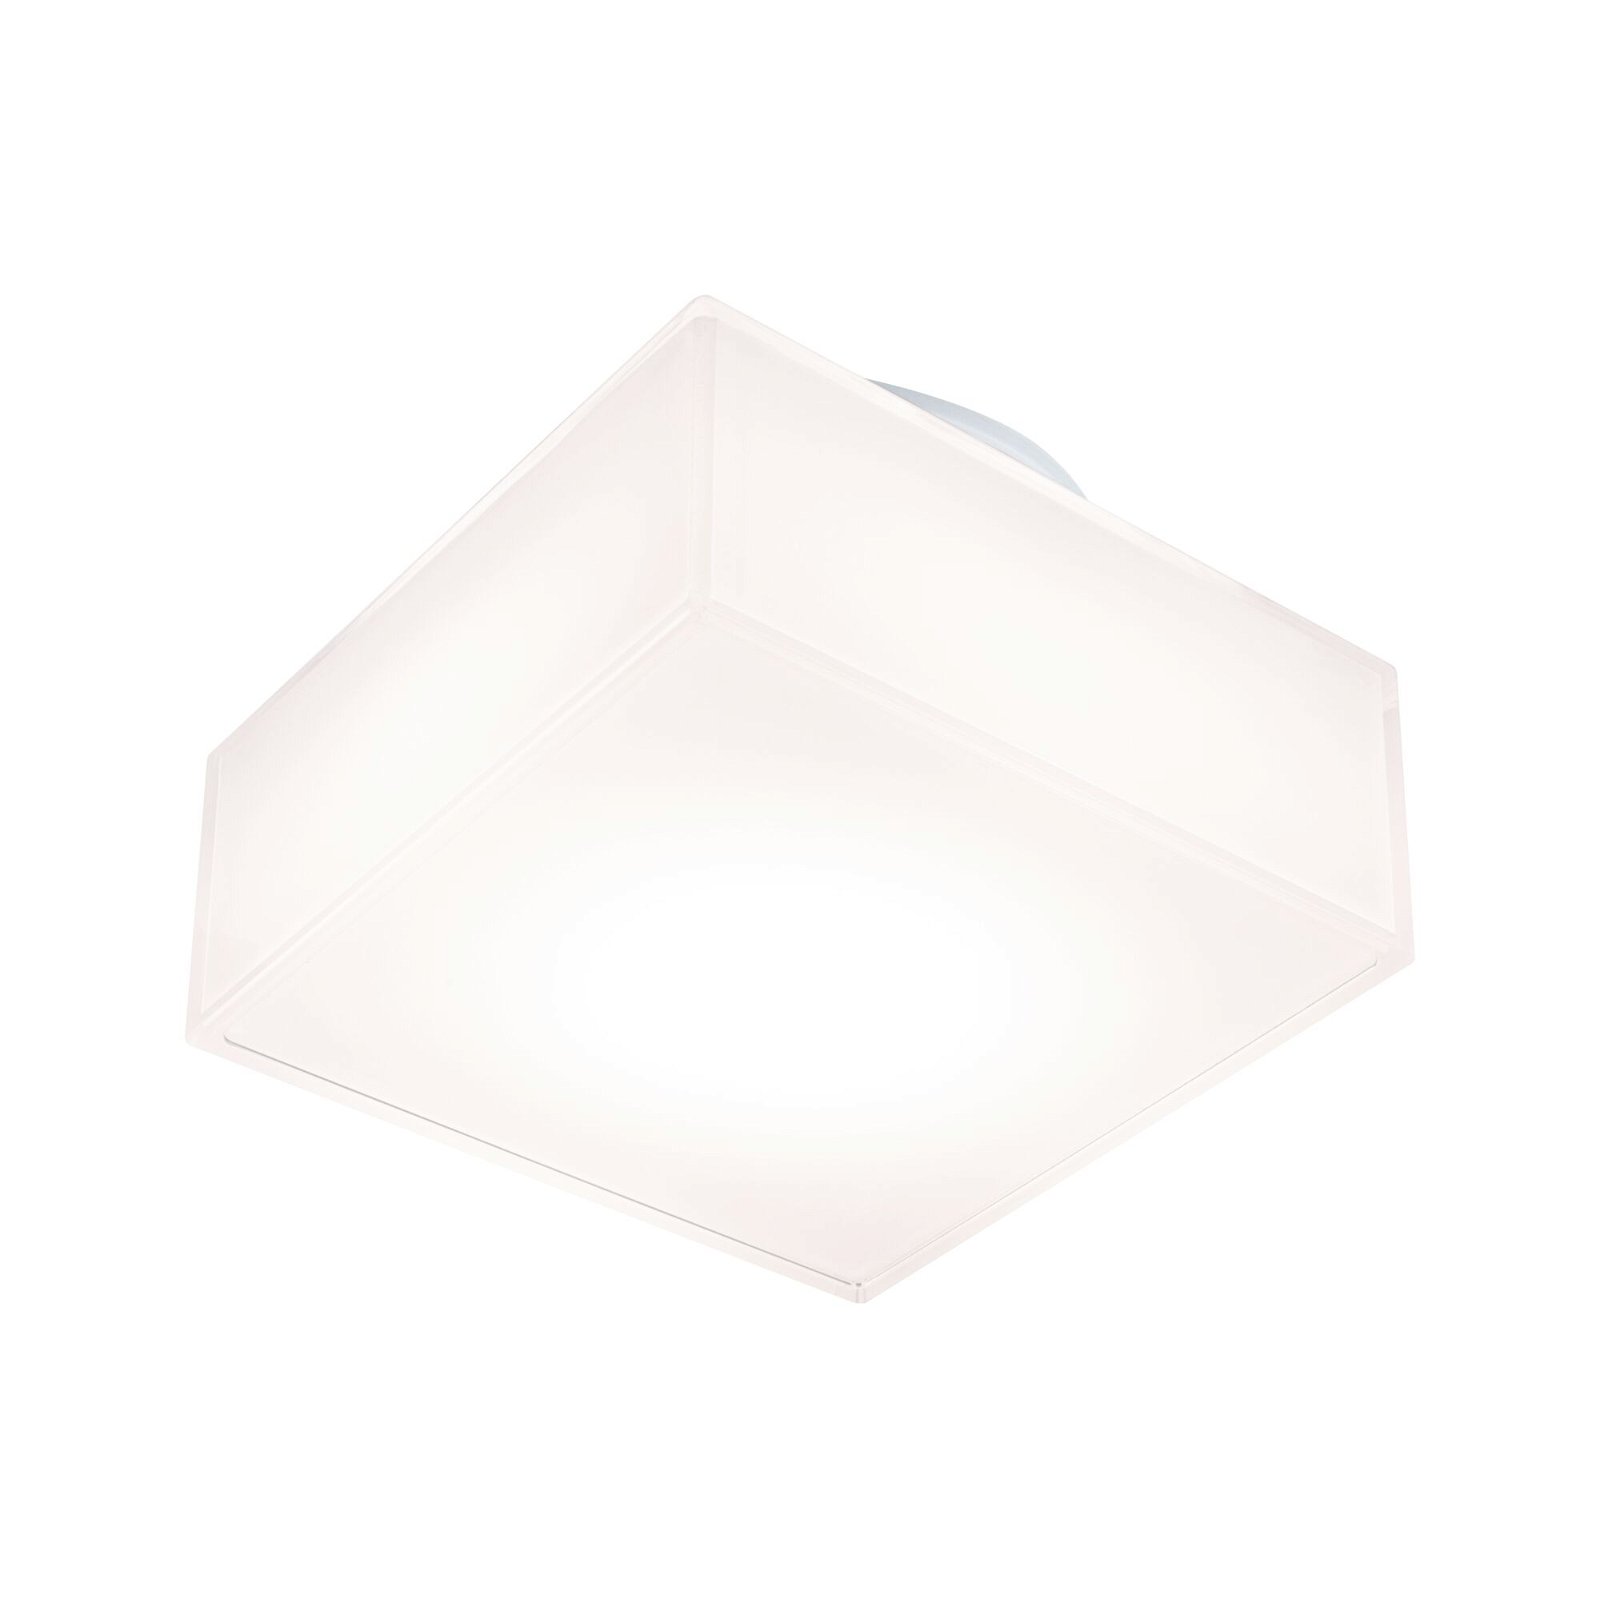 LED Ceiling luminaire Maro IP44 3000K 430lm 230V 6,8W White